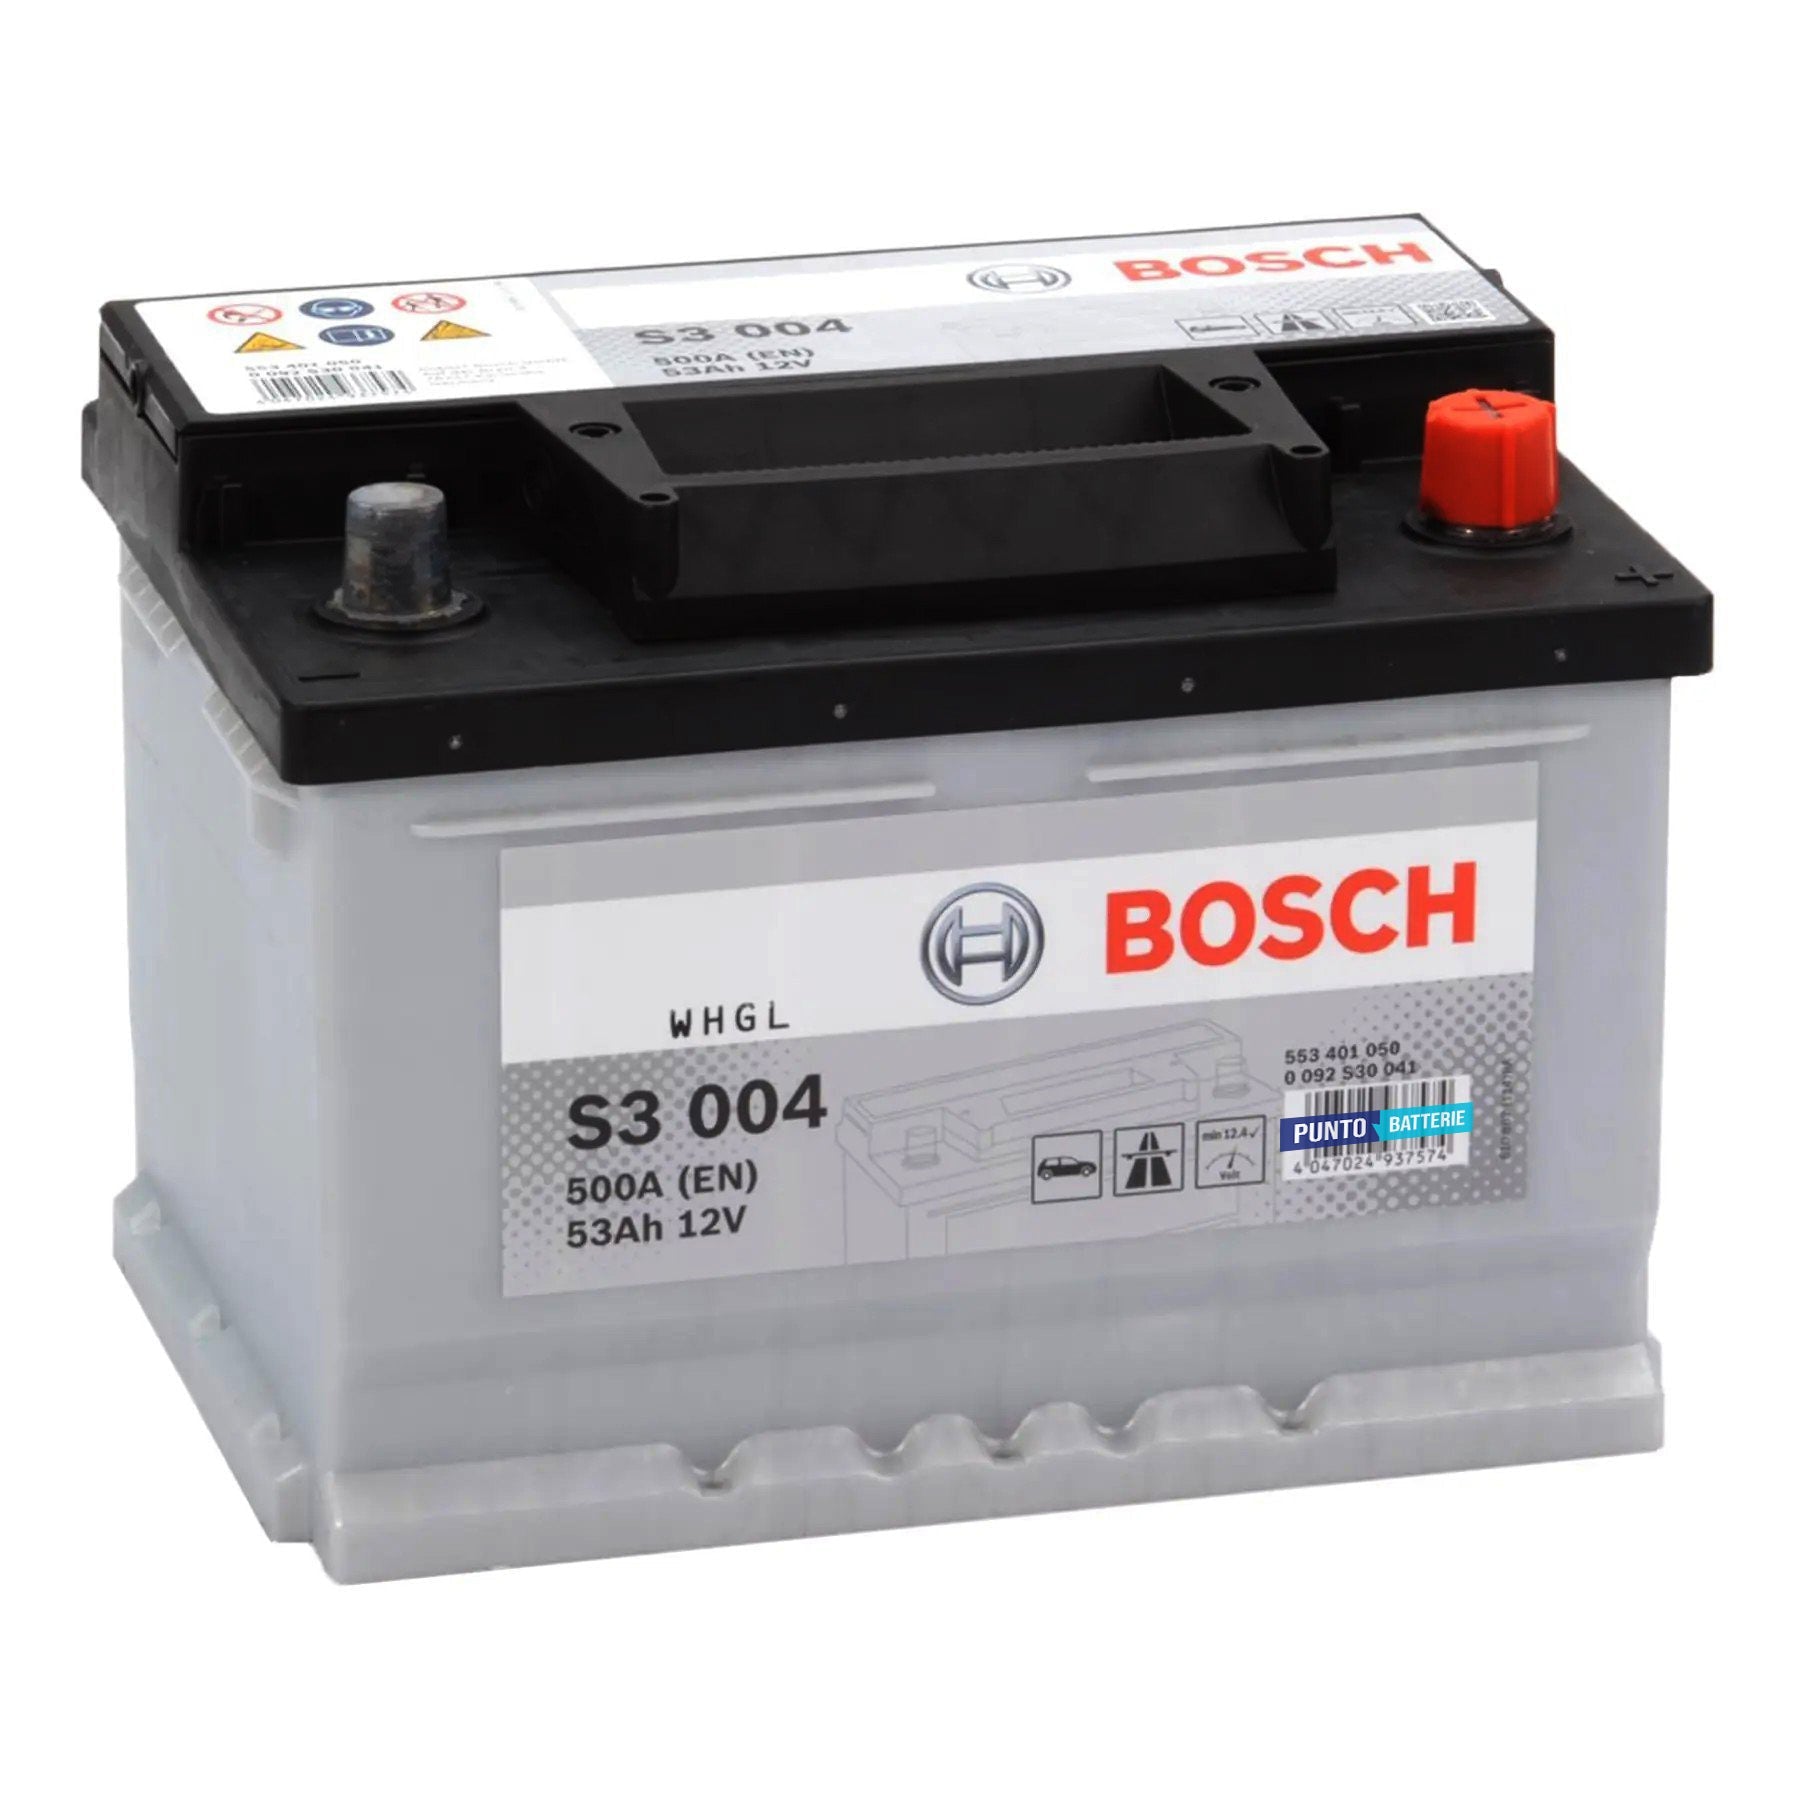 Batteria originale Bosch S3 S3 004, dimensioni 242 x 175 x 175, polo positivo a destra, 12 volt, 53 amperora, 500 ampere. Batteria per auto e veicoli leggeri.